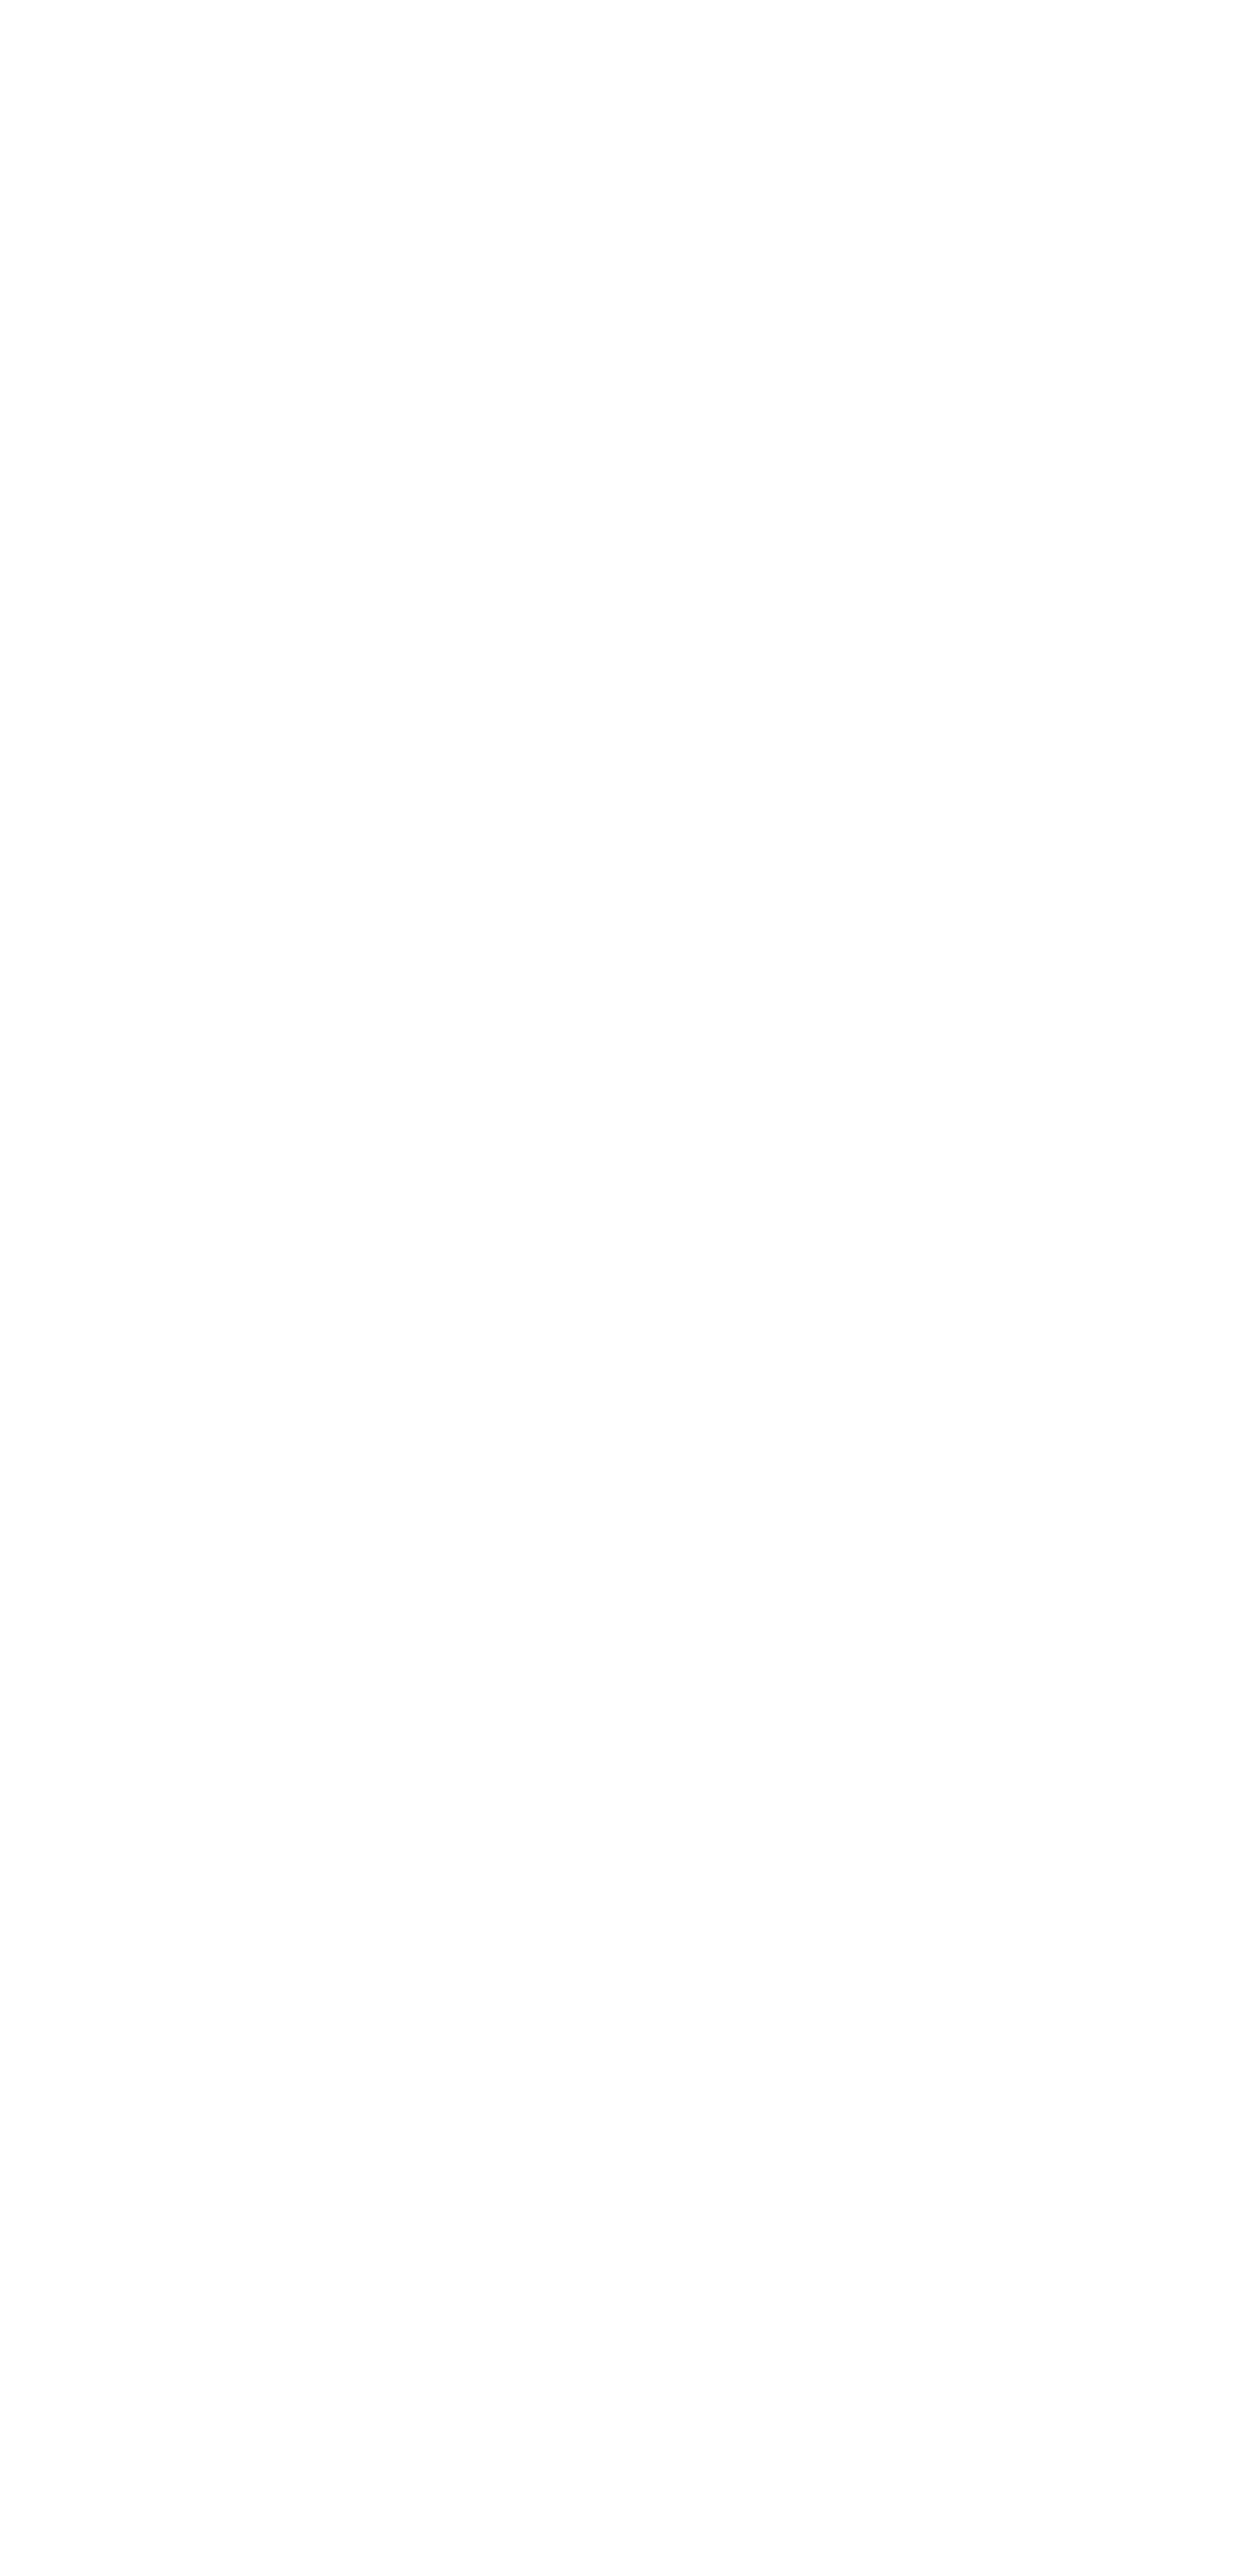 Als Maniac Mansion im Jahr 1987 als wichtiger Meilenstein des Genres Point-and-Click-Adventure von Ron Gilbert entwickelt und von der Lucasfilm Games (heute LucasArts) veröffentlicht wurde, begann eine￼ legendäre Serie von Adventure-Spielen, die eine ganze Generation faszinierte. Das innovative Bedienkonzept basierte auf der SCUMM-Sprache (Script Creation Utility for Maniac Mansion) mit dem genialen "Verb-Gegenstand-Interface".Das Spiel erschien 1987 ursprünglich für C64. Darauf folgten zuerst Umsetzungen für Apple II und andere unbedeutende Betriebssysteme. Später erschienen technisch verbesserte Versionen für Amiga und Atari ST. 
Anhand der Graphiken für die Amiga-Version wird jetzt - als Reminiszenz an den Klassiker - ein detailliertes Poster mit allen Räumen des Anwesens und deren Verbindungen zum Erwerb angeboten:
• DIN A0 á 39,90 €
84,1 cm x 118,9 cm (= 1 m²)

• DIN A1 á 29,90 €59,4 cm x 84,1 cm

(inkl. MSt, Verpackung & Porto; Bestellung an mm@alexanderkeck.de)

￼















